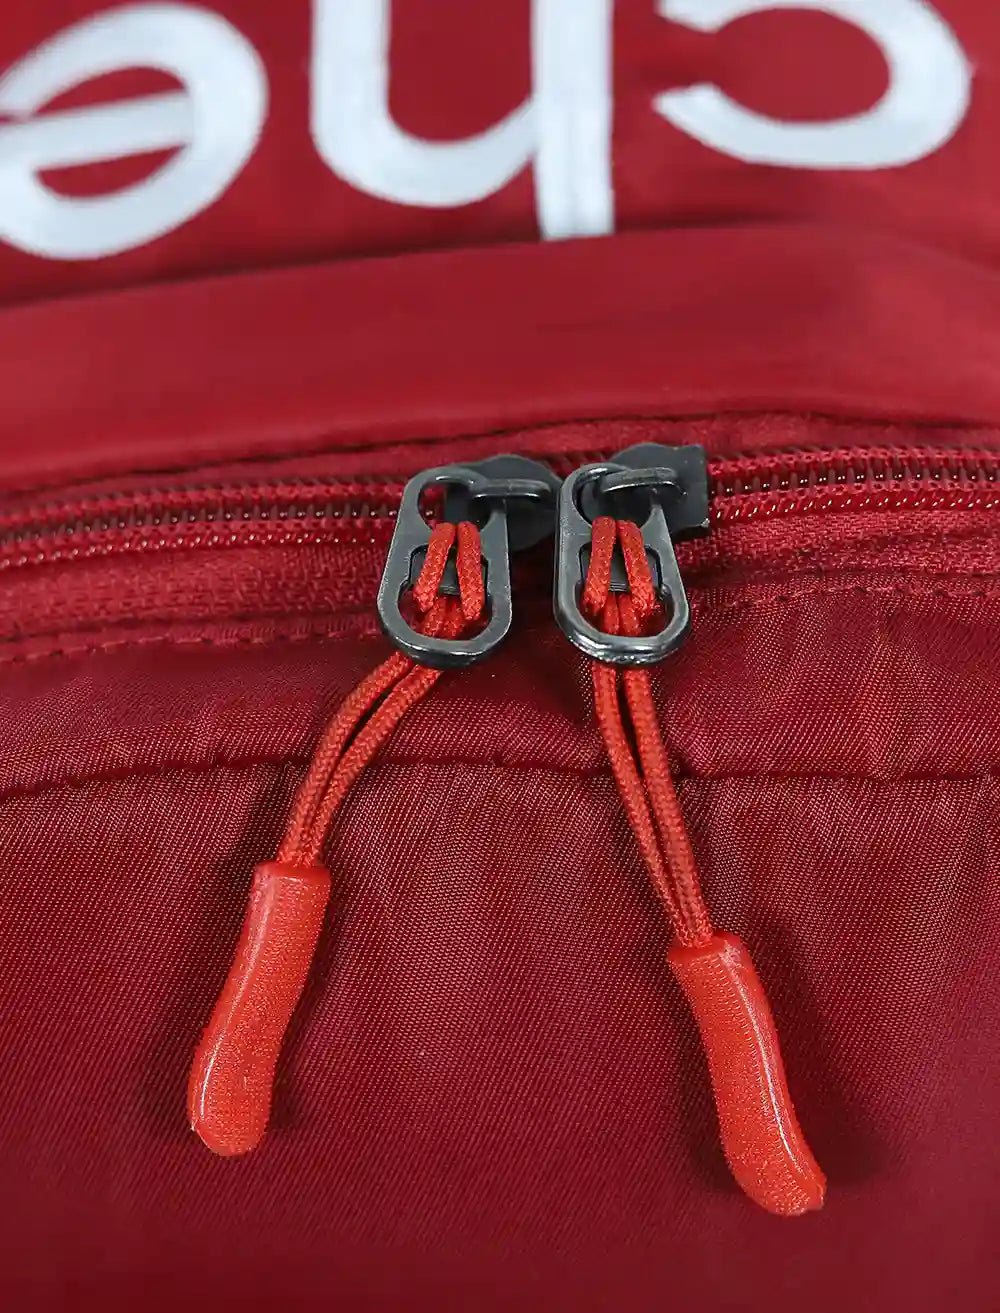 Blucheez 3D Embroidered Backpack - Blucheez